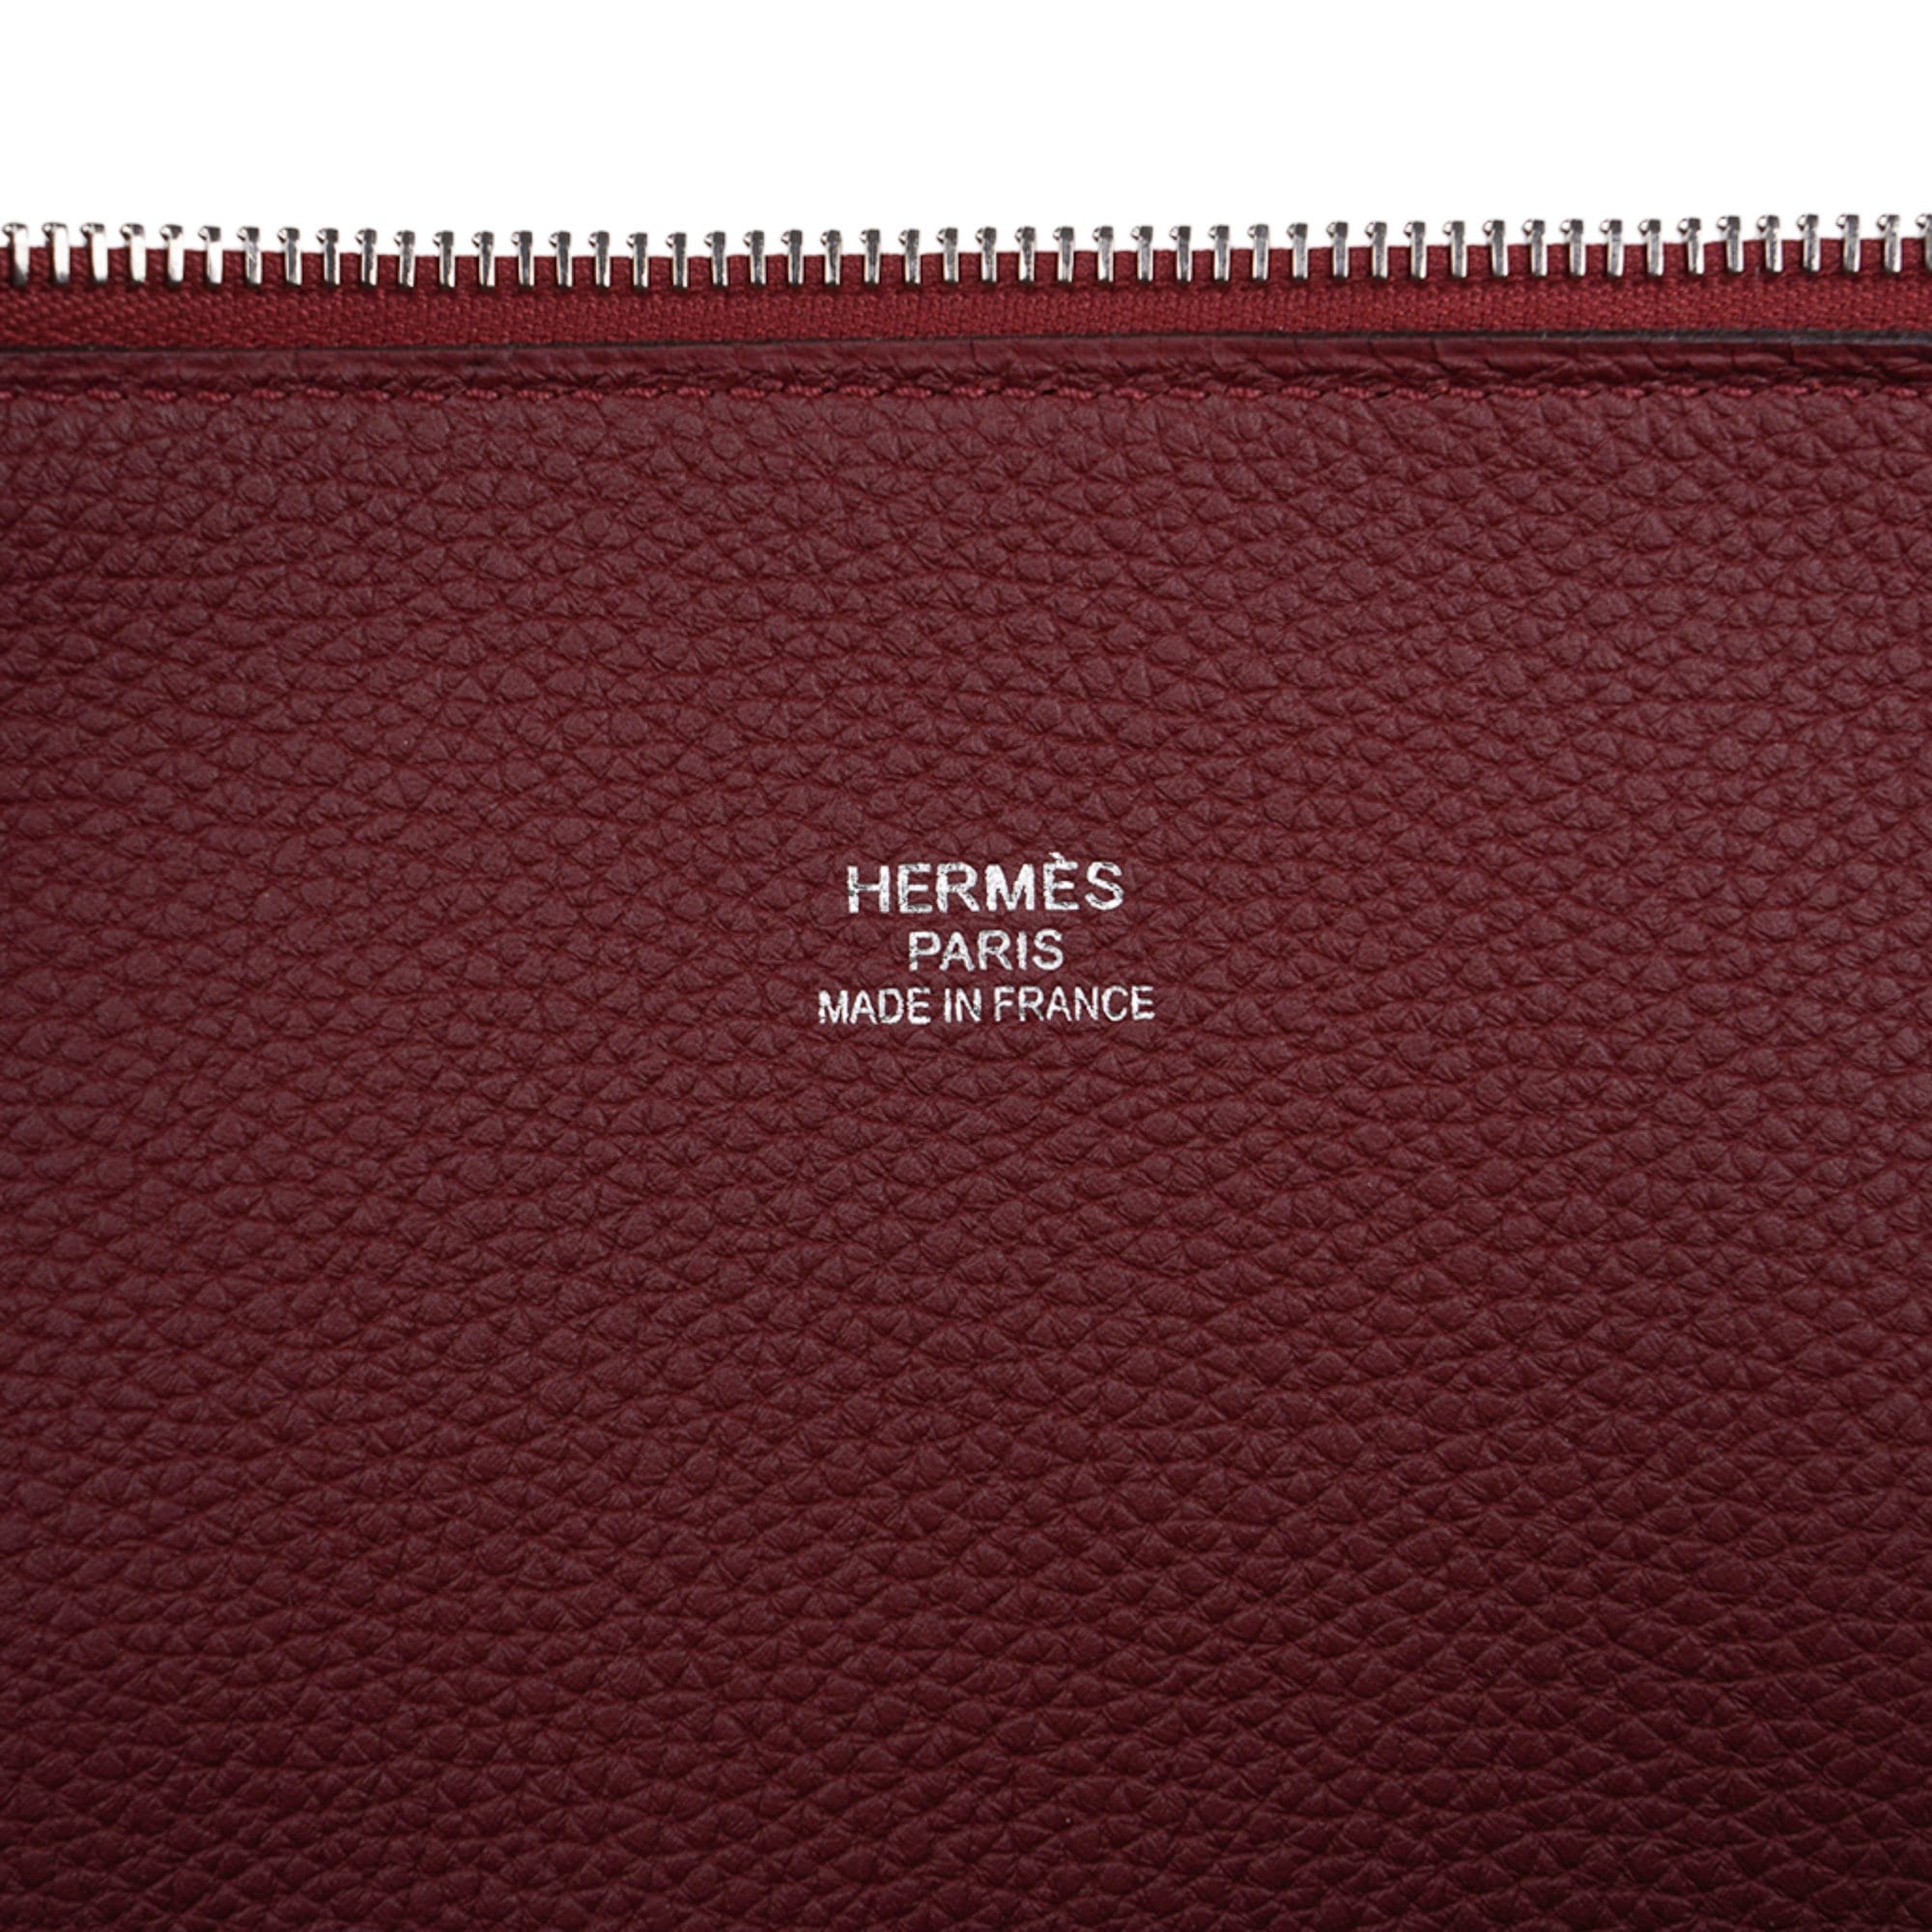 Hermes 2008 Red Bolide Jumbo Travel Bag 47 cm TGM New!